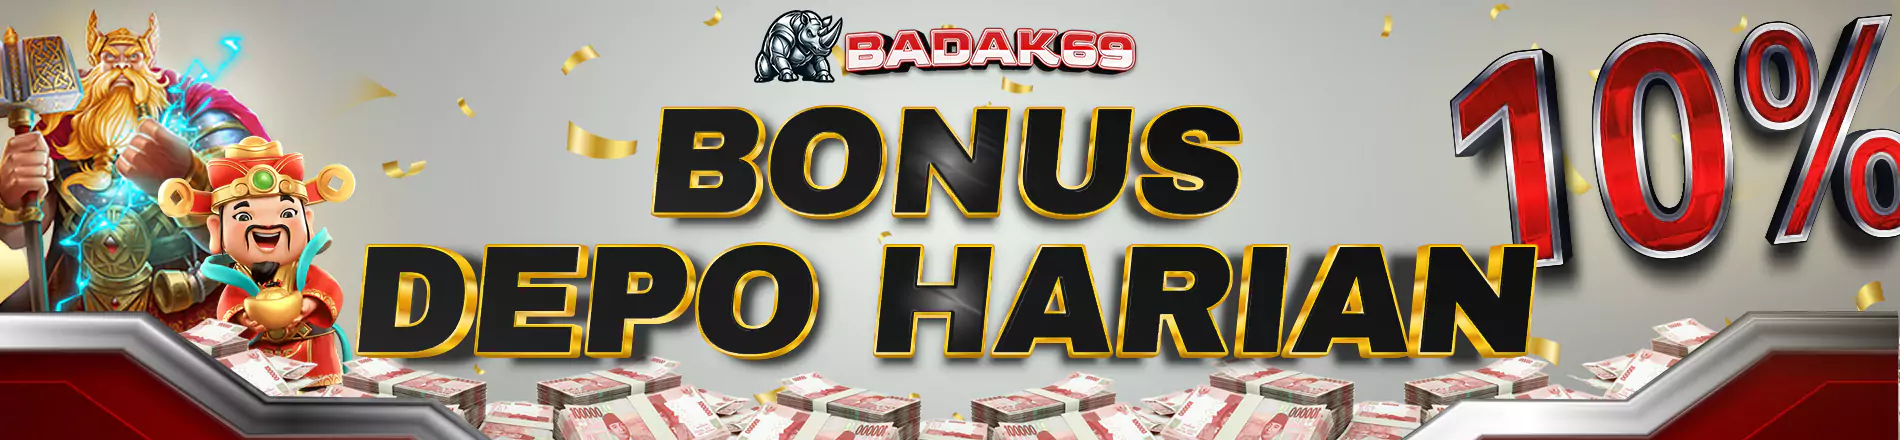 Promo Bonus Harian 10% - Badak69